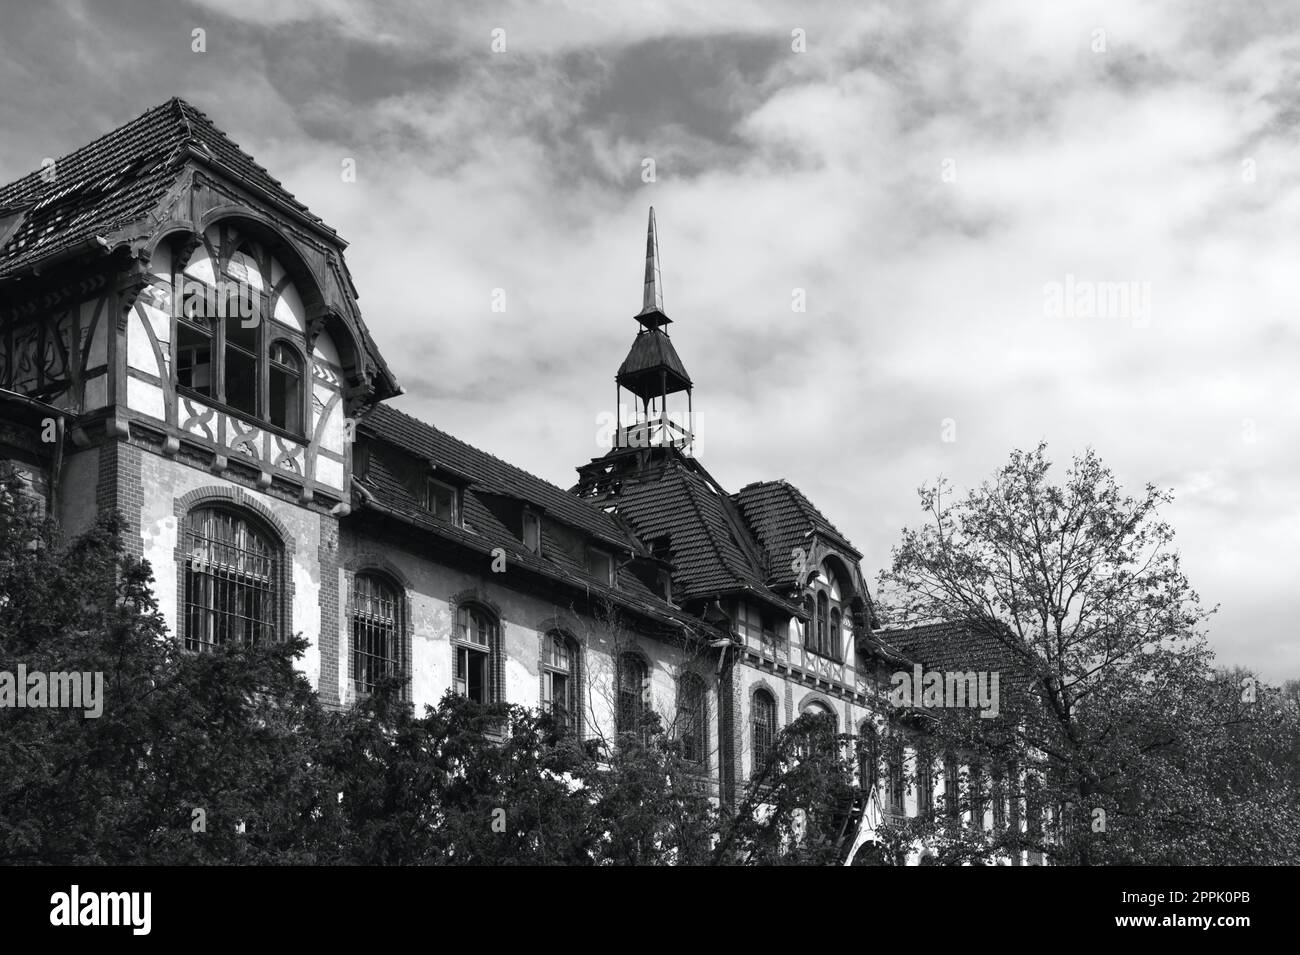 Abandonné bâtiment historique en Allemagne hôpital horreur scène créepy emplacement en noir et blanc Banque D'Images